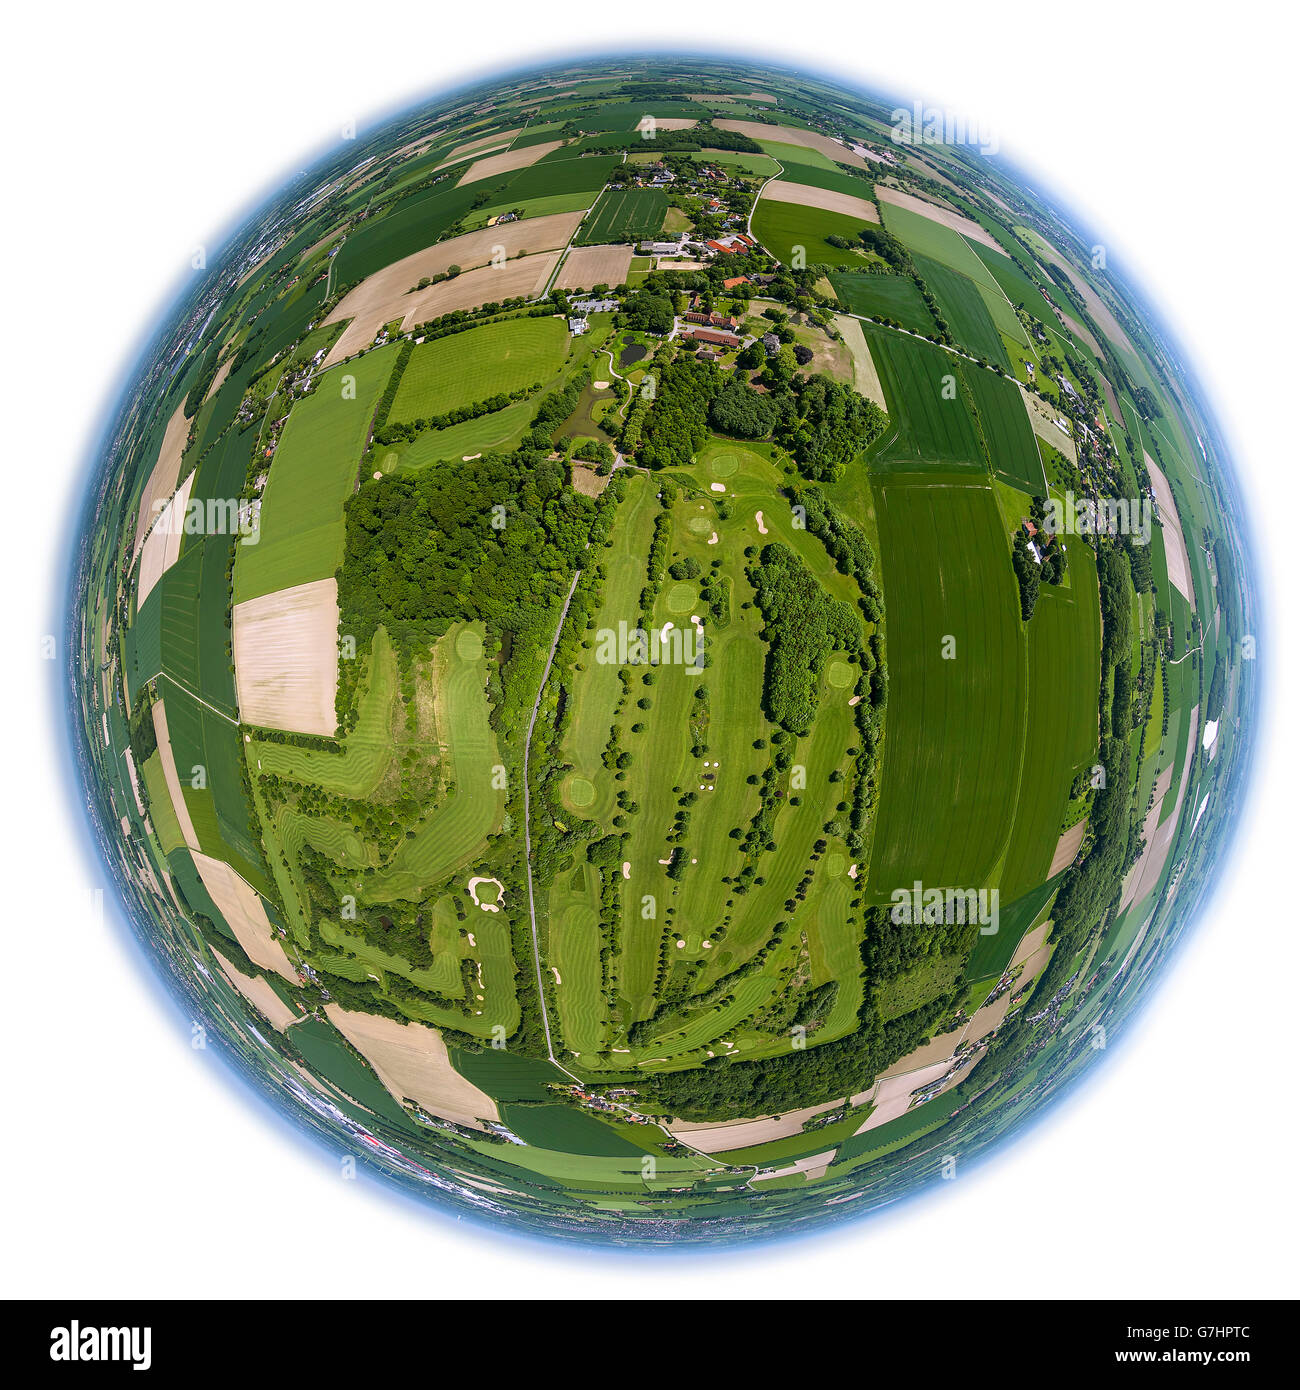 Luftbild, fisheye Optik, fisheye-Objektiv, Übersicht über den Golfplatz Hamm, Golfclub Hamm-Drechen, Grüns, Bunker, Hamm, Stockfoto